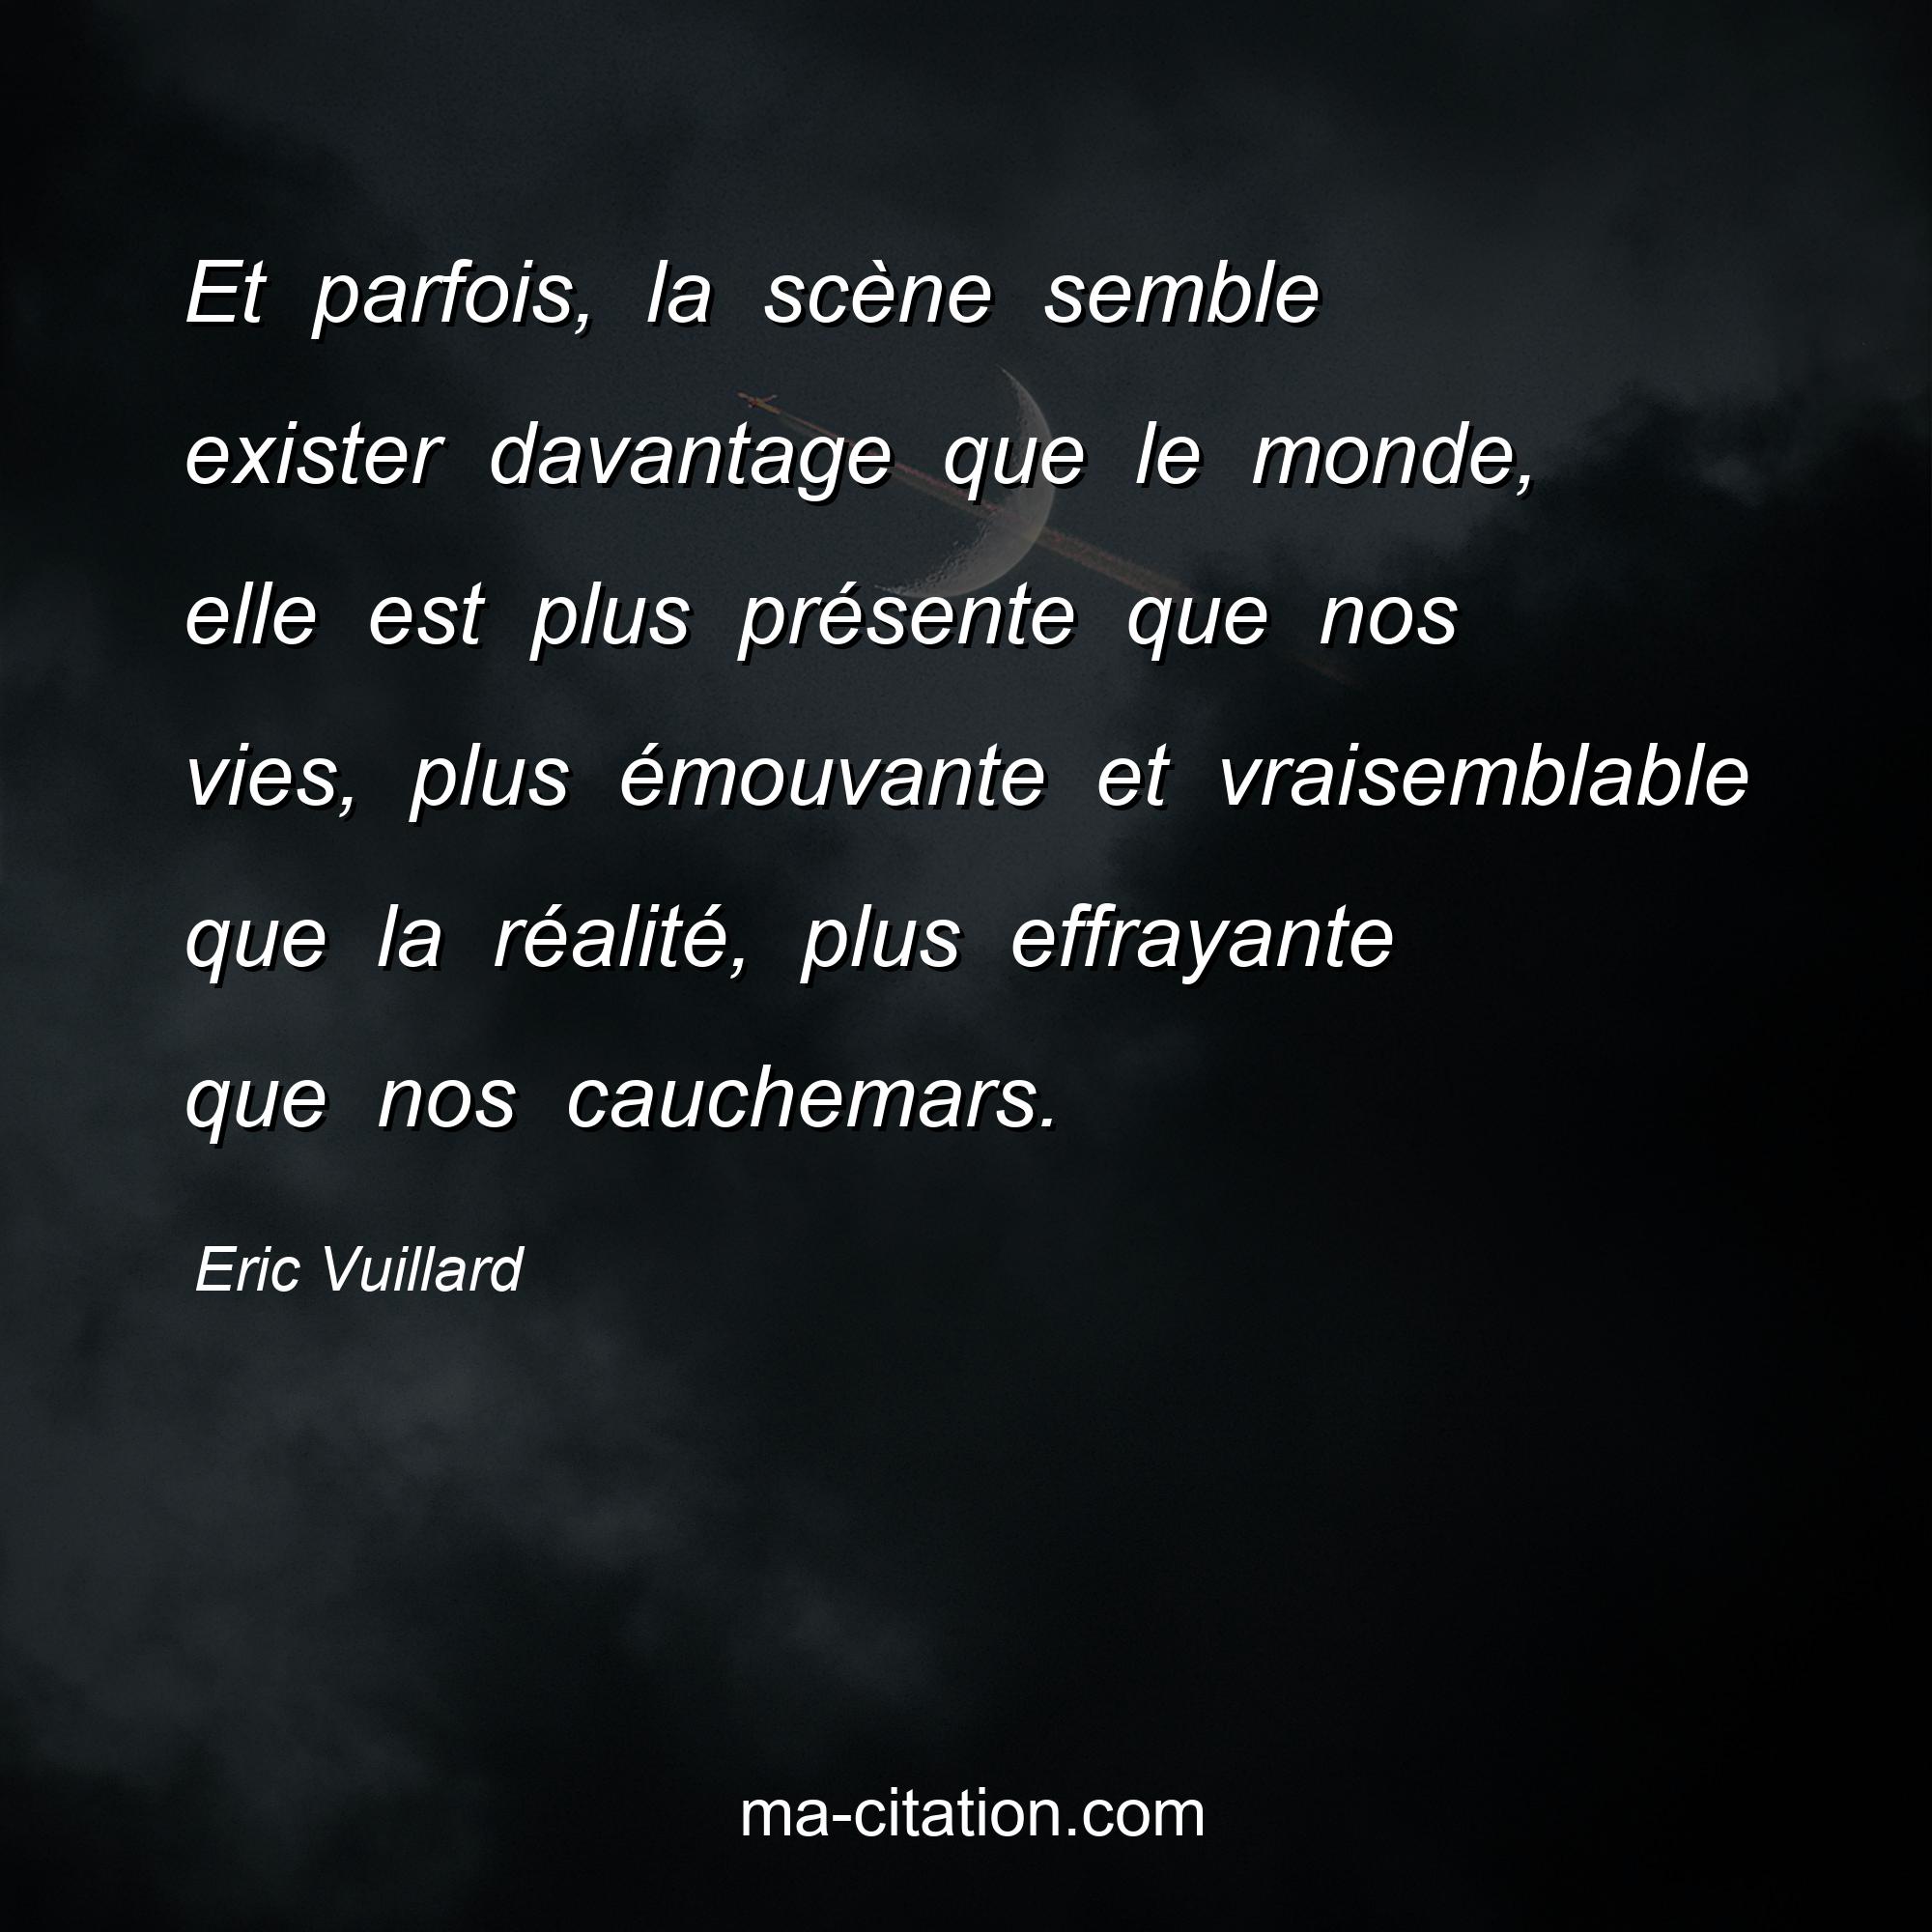 Eric Vuillard : Et parfois, la scène semble exister davantage que le monde, elle est plus présente que nos vies, plus émouvante et vraisemblable que la réalité, plus effrayante que nos cauchemars.